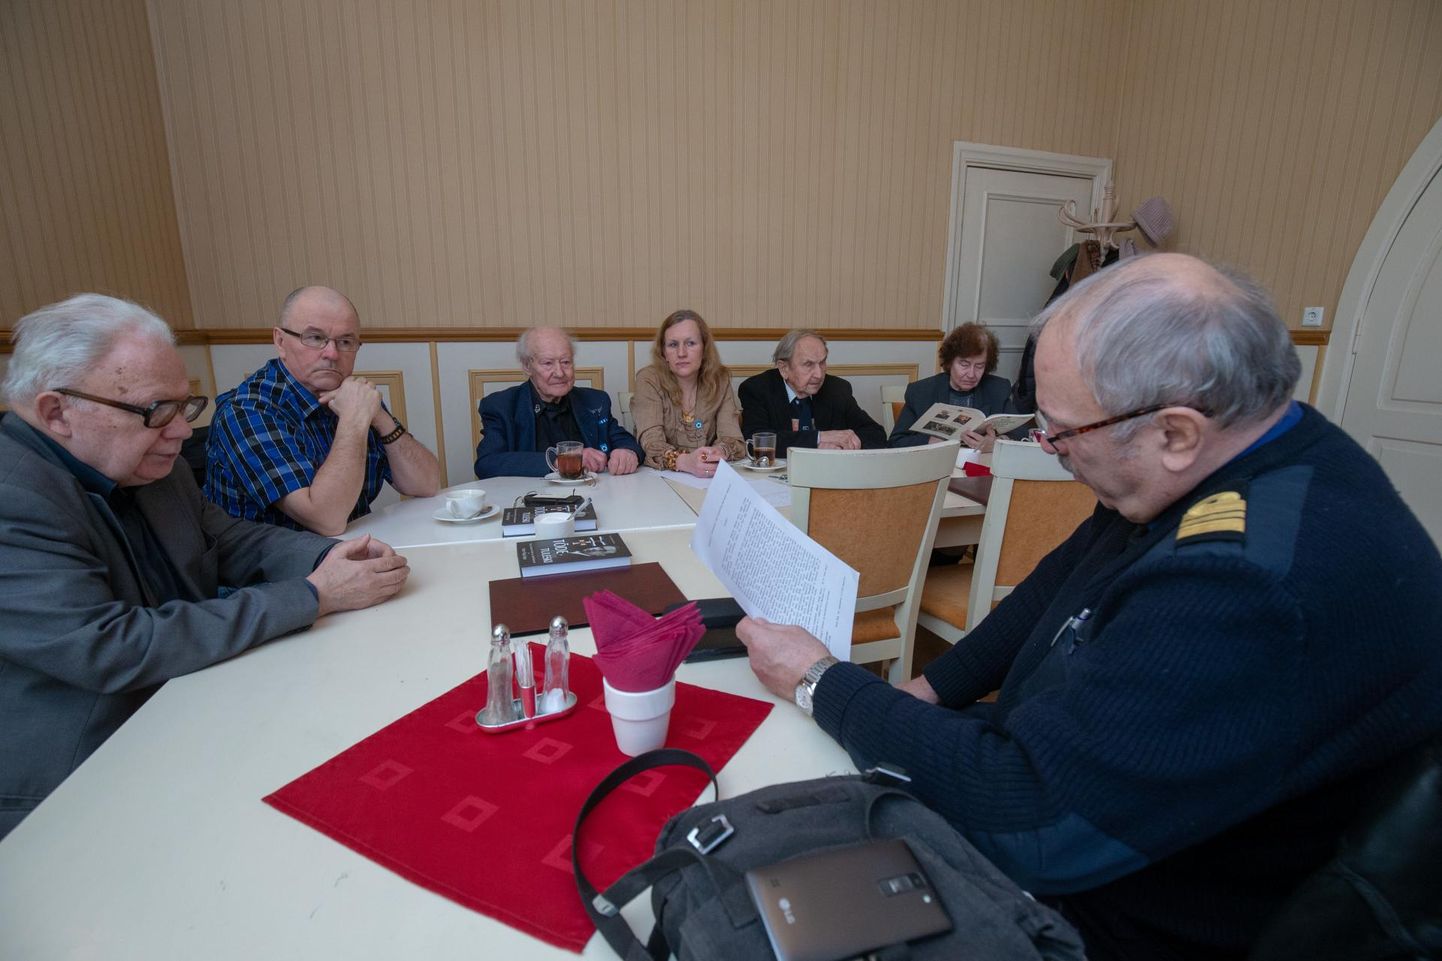 Viljandi kohviku väikses saalis istusid koos vabadusvõitlejate ühenduse viie piirkonna esindajad ning taunisid mõtet anda välja teine Eesti rahva tänumedal.